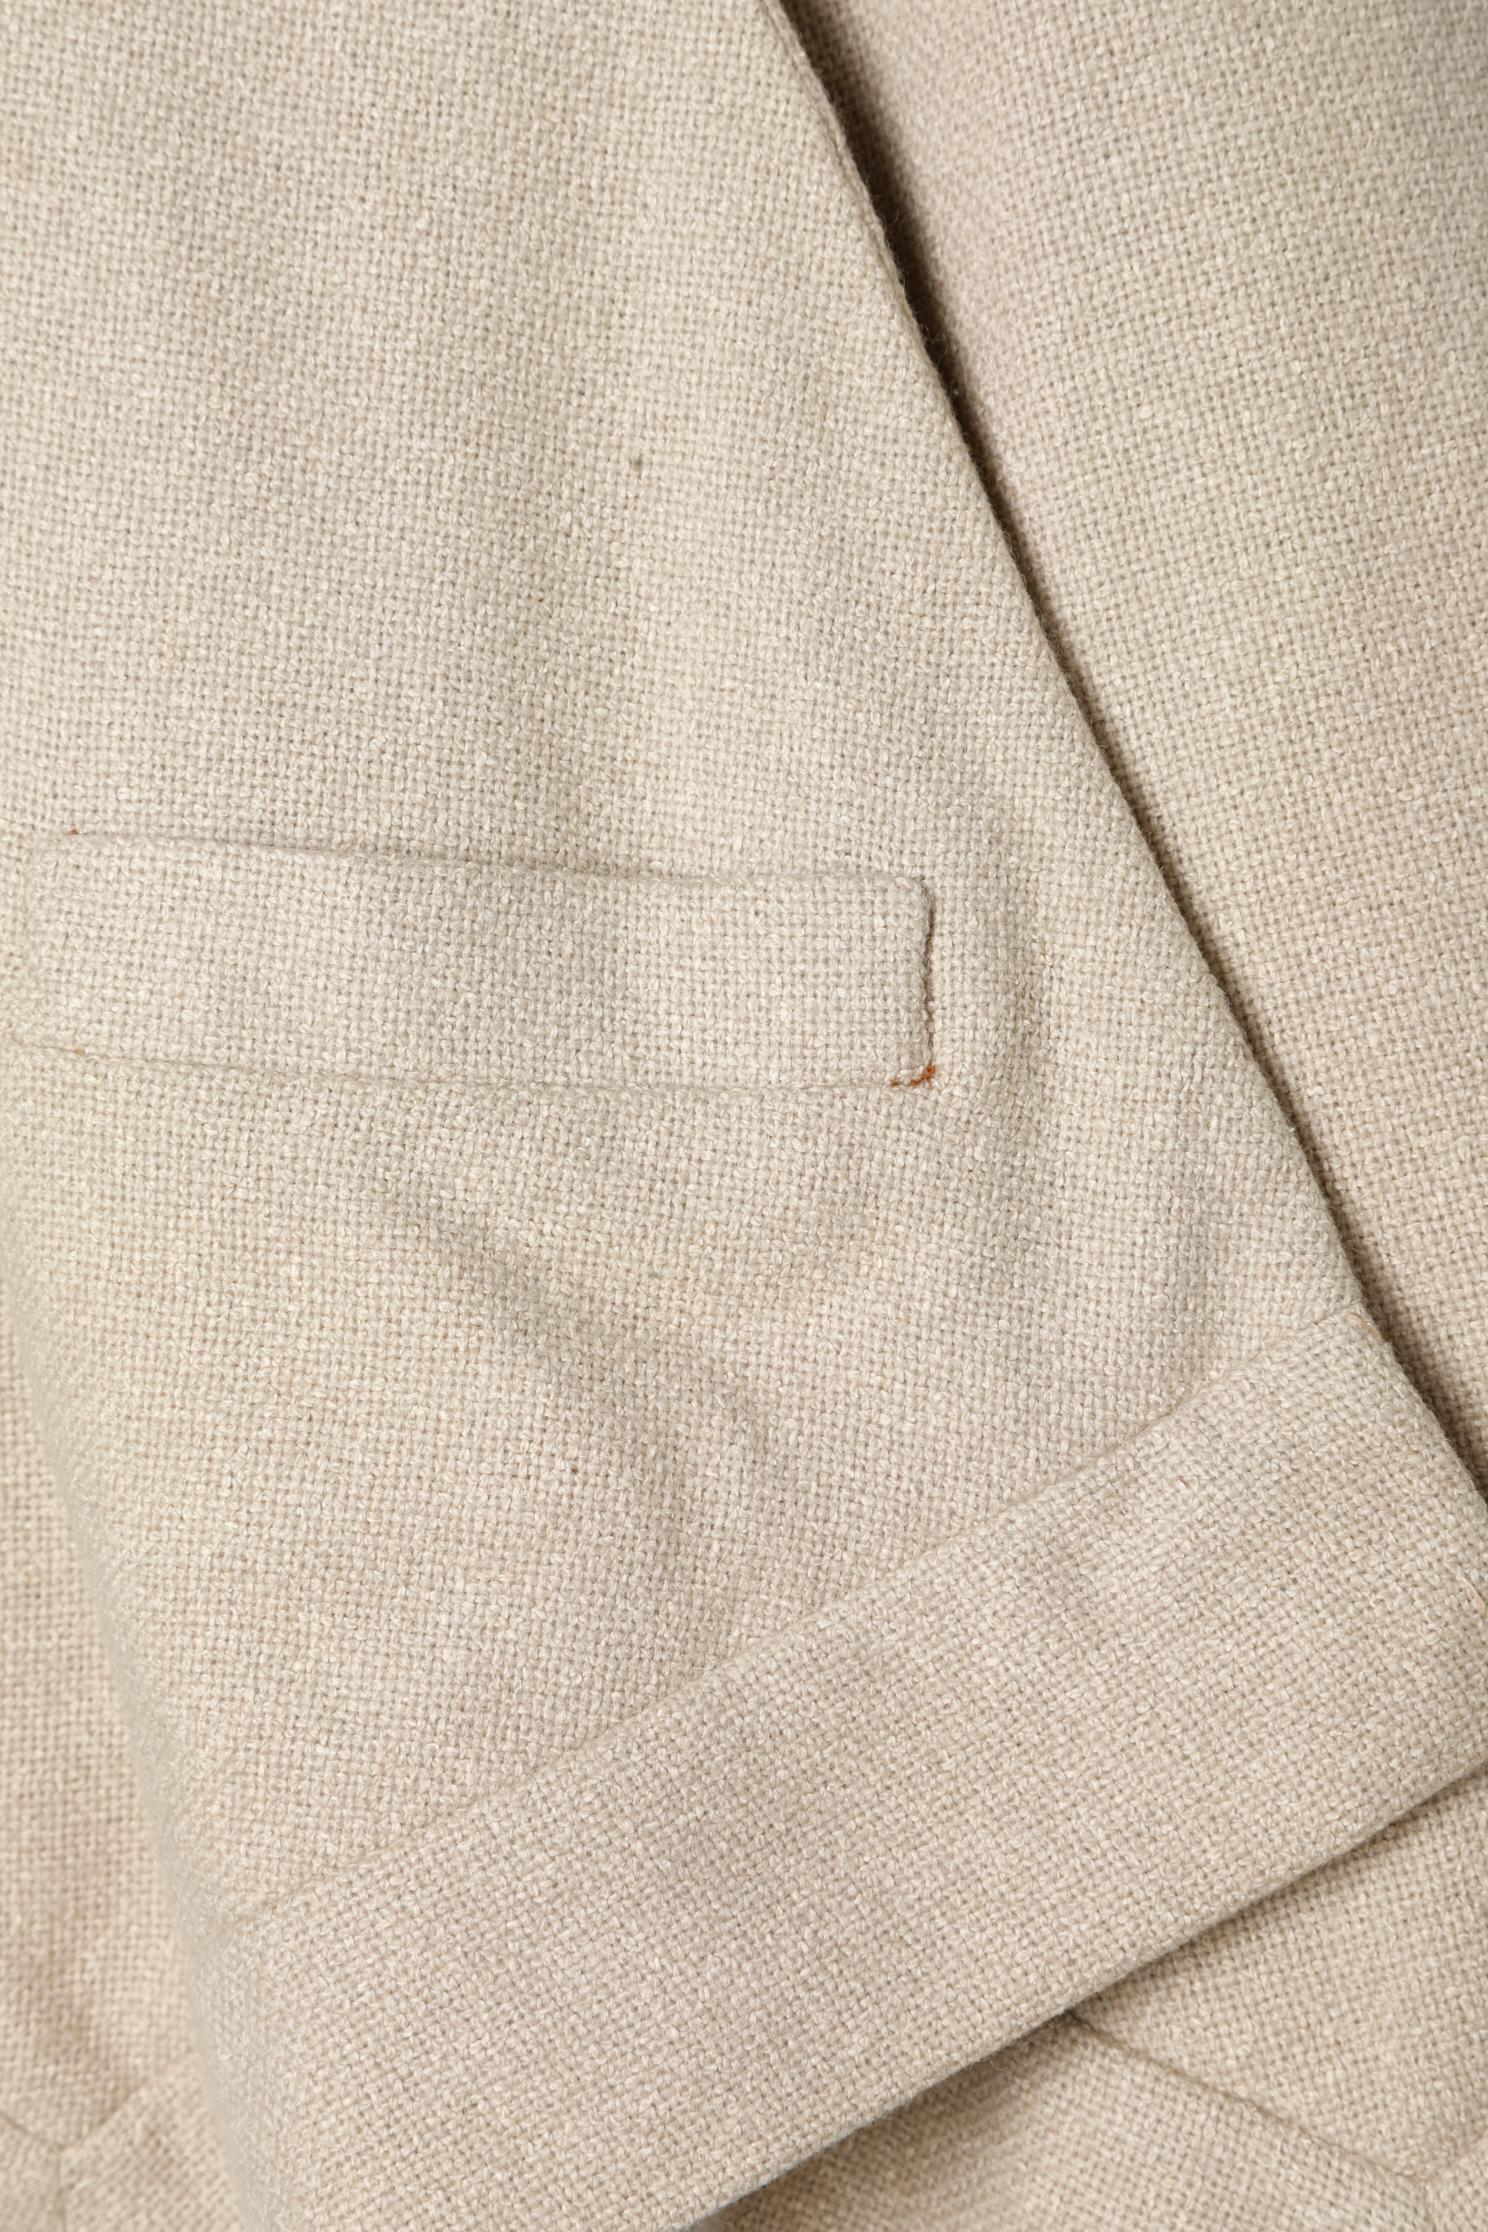 Cape courte en laine beige avec poche et trou pour les bras. Doublure en crêpe. 
Longueur totale de l'avant = 56 cm
Longueur totale du dos = 77 cm
TAILLE M 